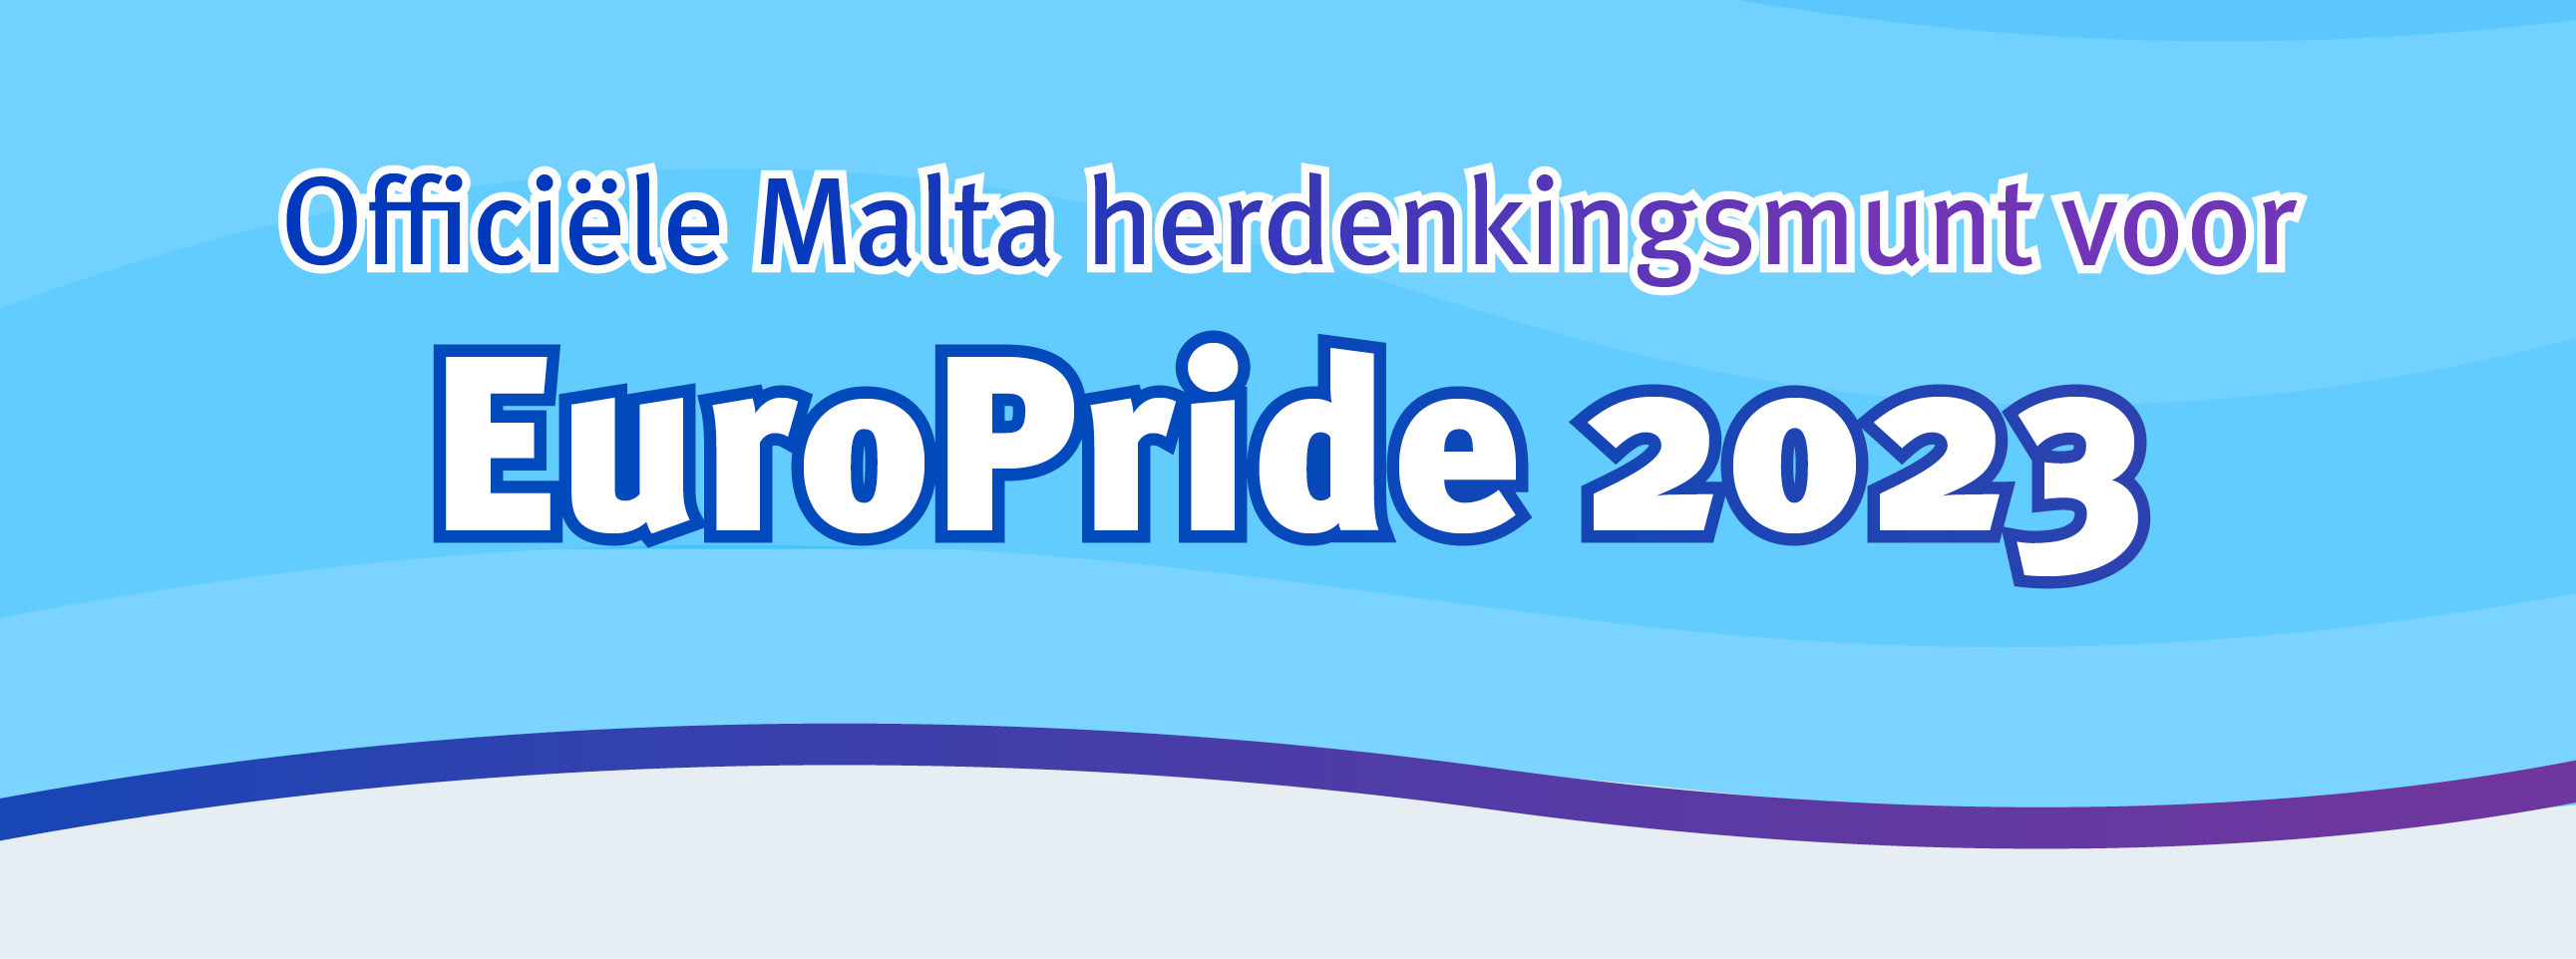 Bekijk en bestel: Malta herdenkingsmunt voor EuroPride 2023